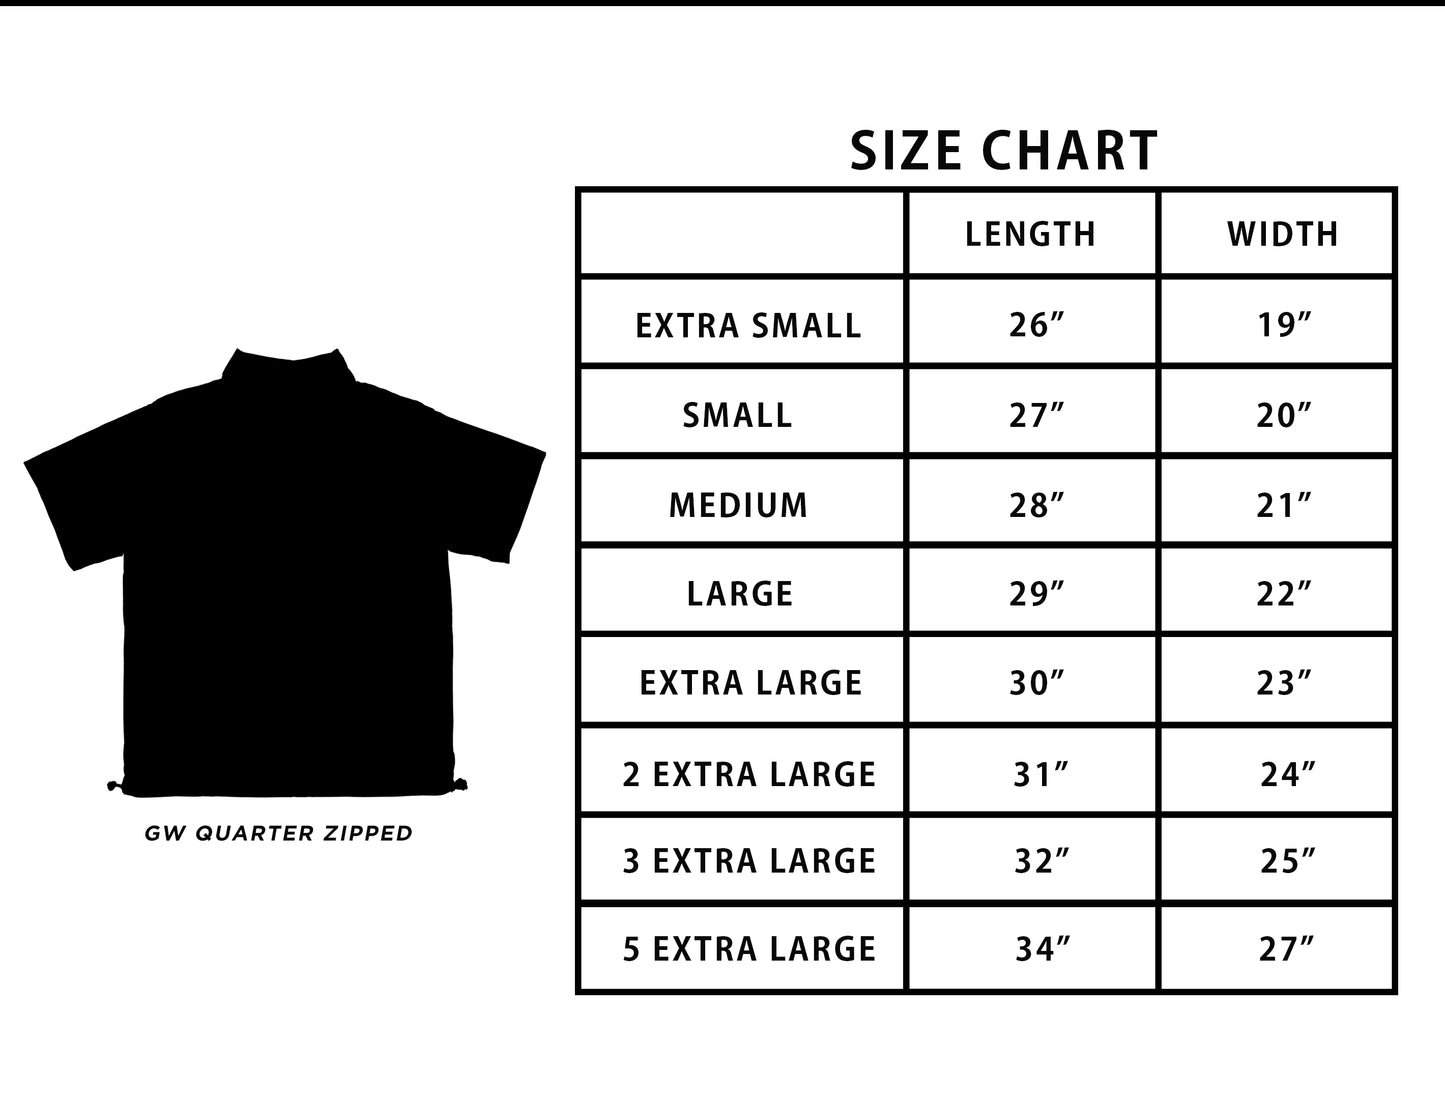 GW Quarter ziped short sleeves V2 (Black)